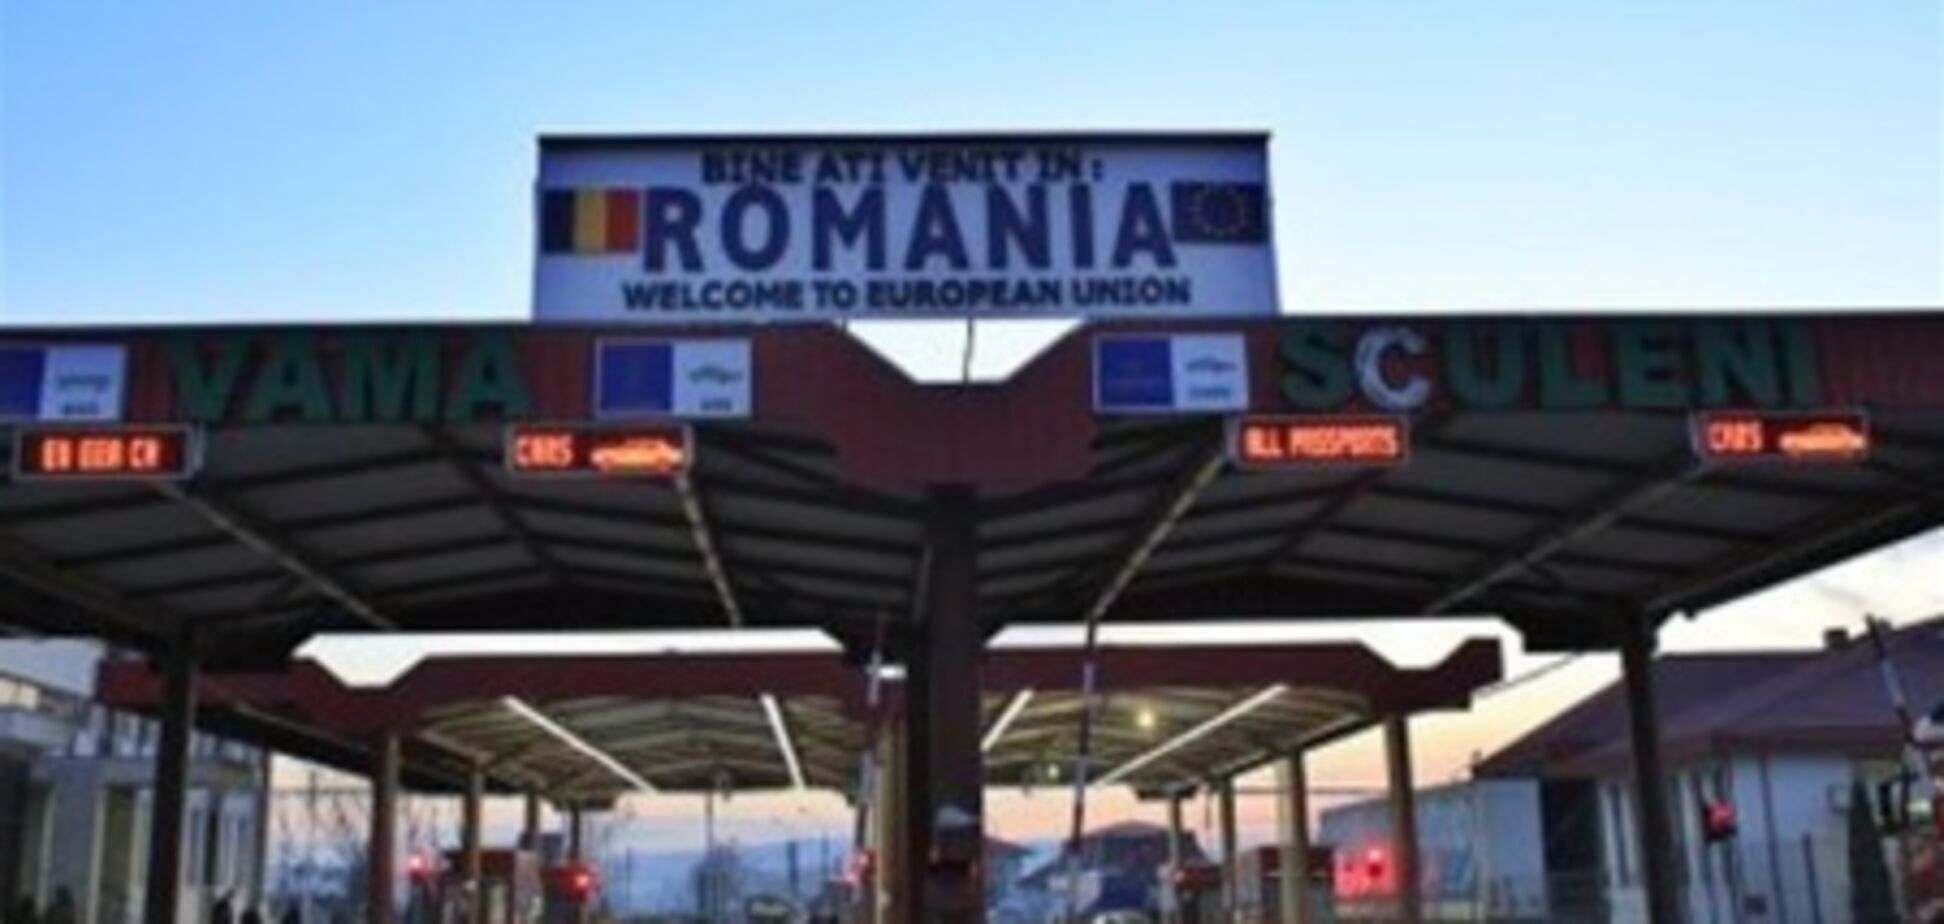 Болгар и румын лишили Шенгена